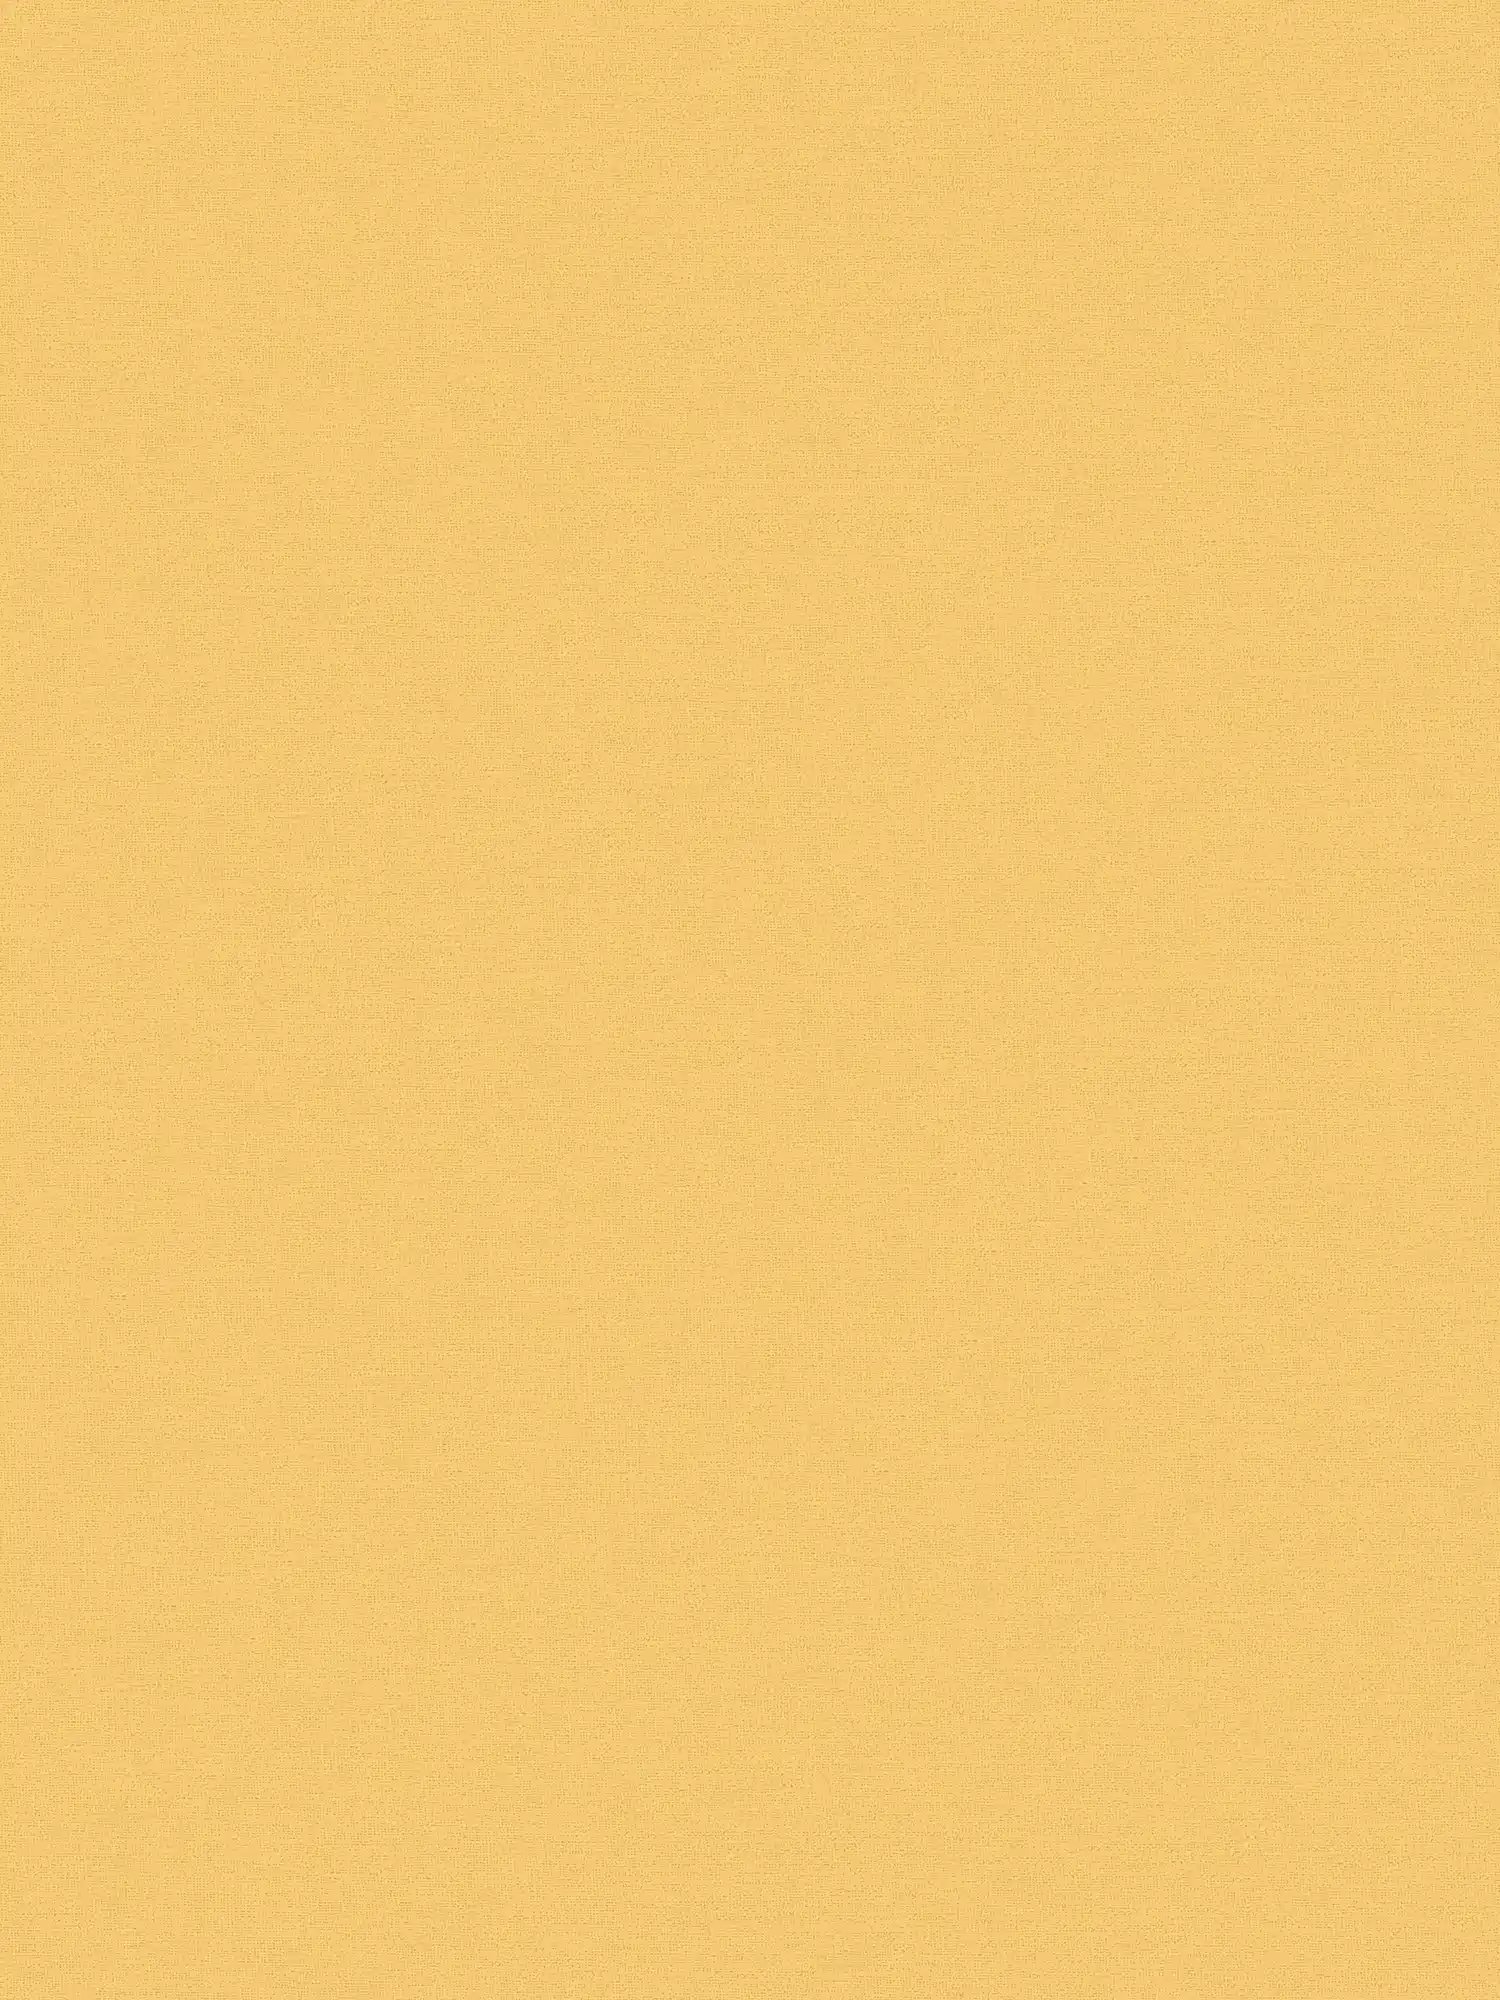 Gelbe Tapete von MICHALSKY einfarbig & matt
